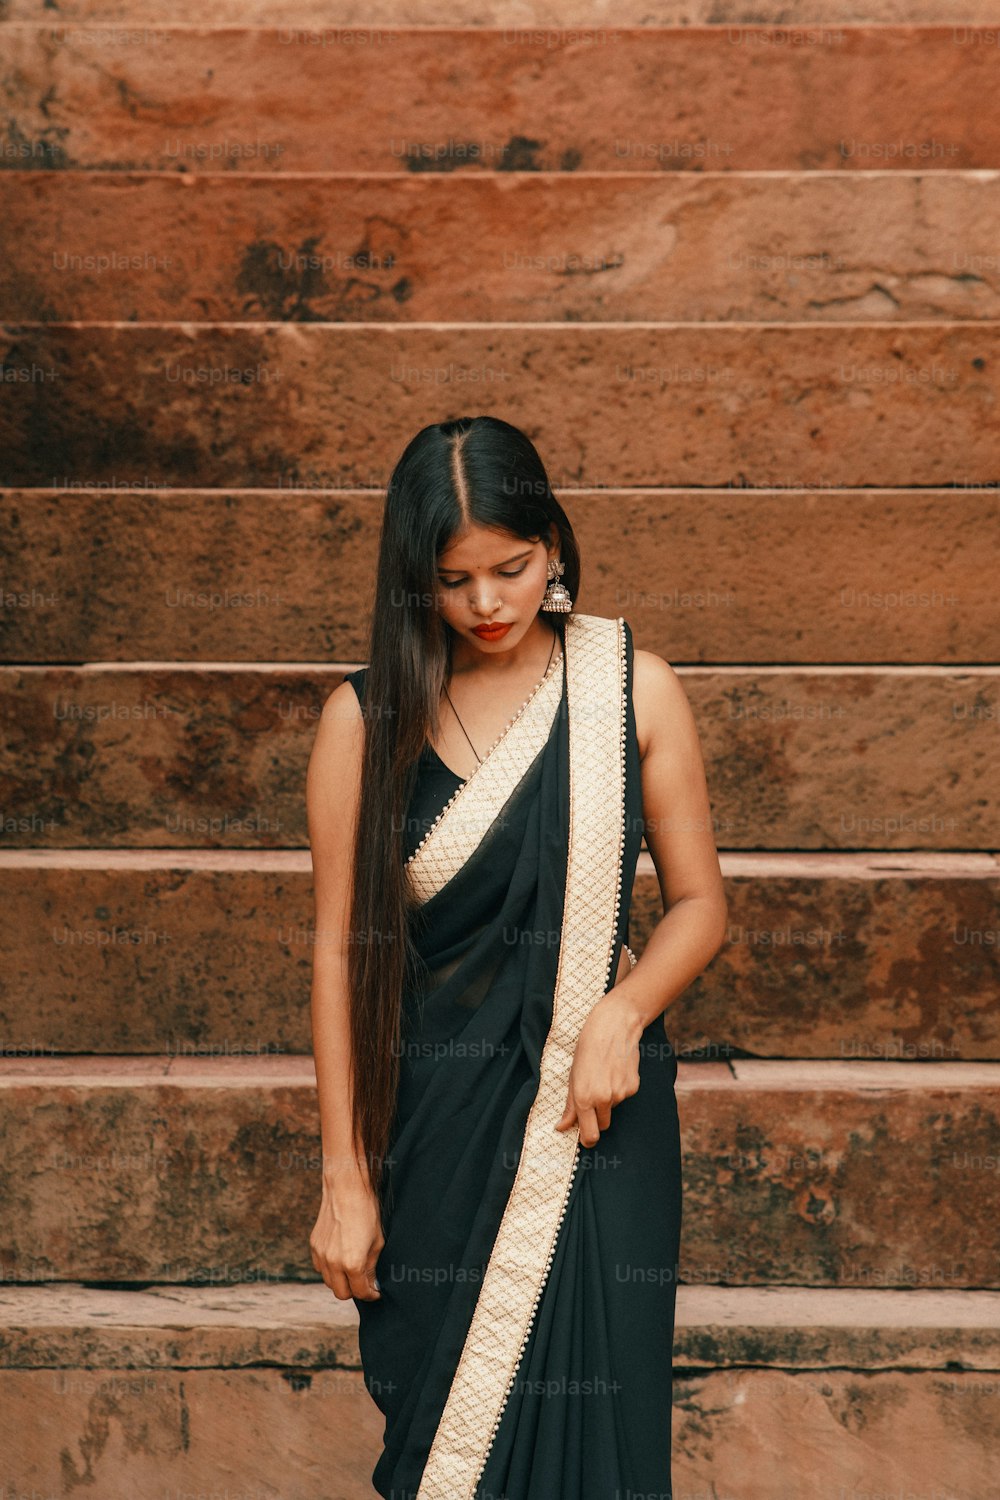 Une femme vêtue d’un sari noir et blanc